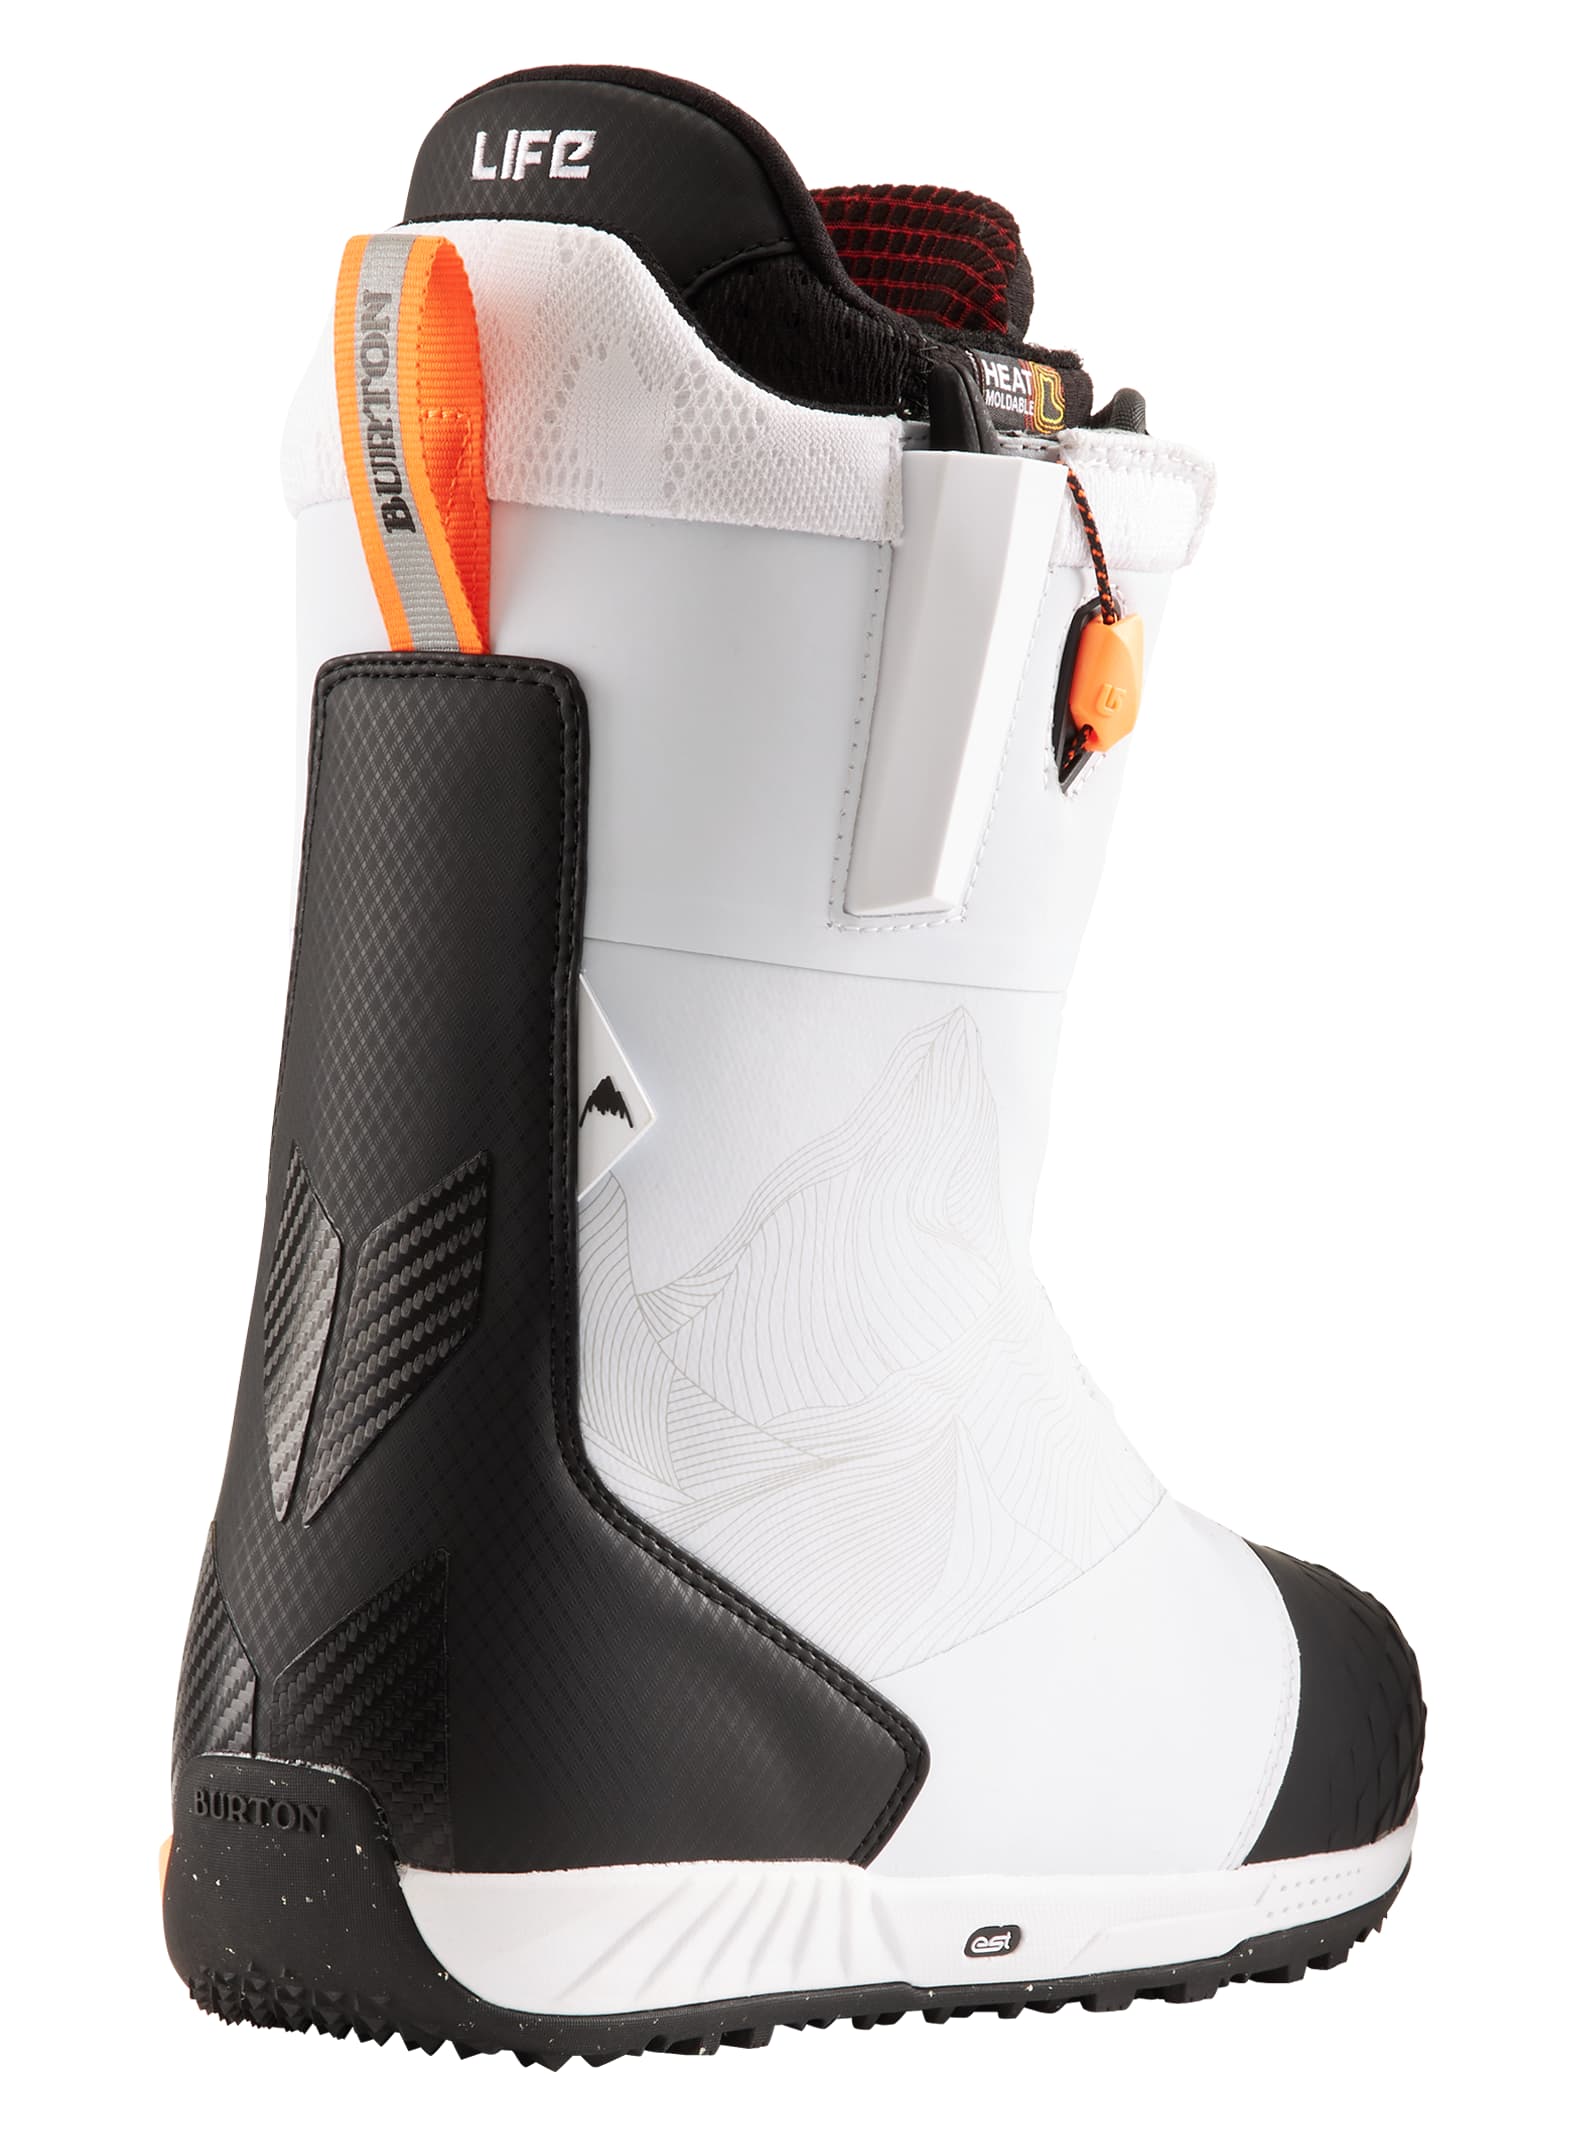 Burton - Boots de snowboard Ion homme | Burton.com Hiver 2022 FR